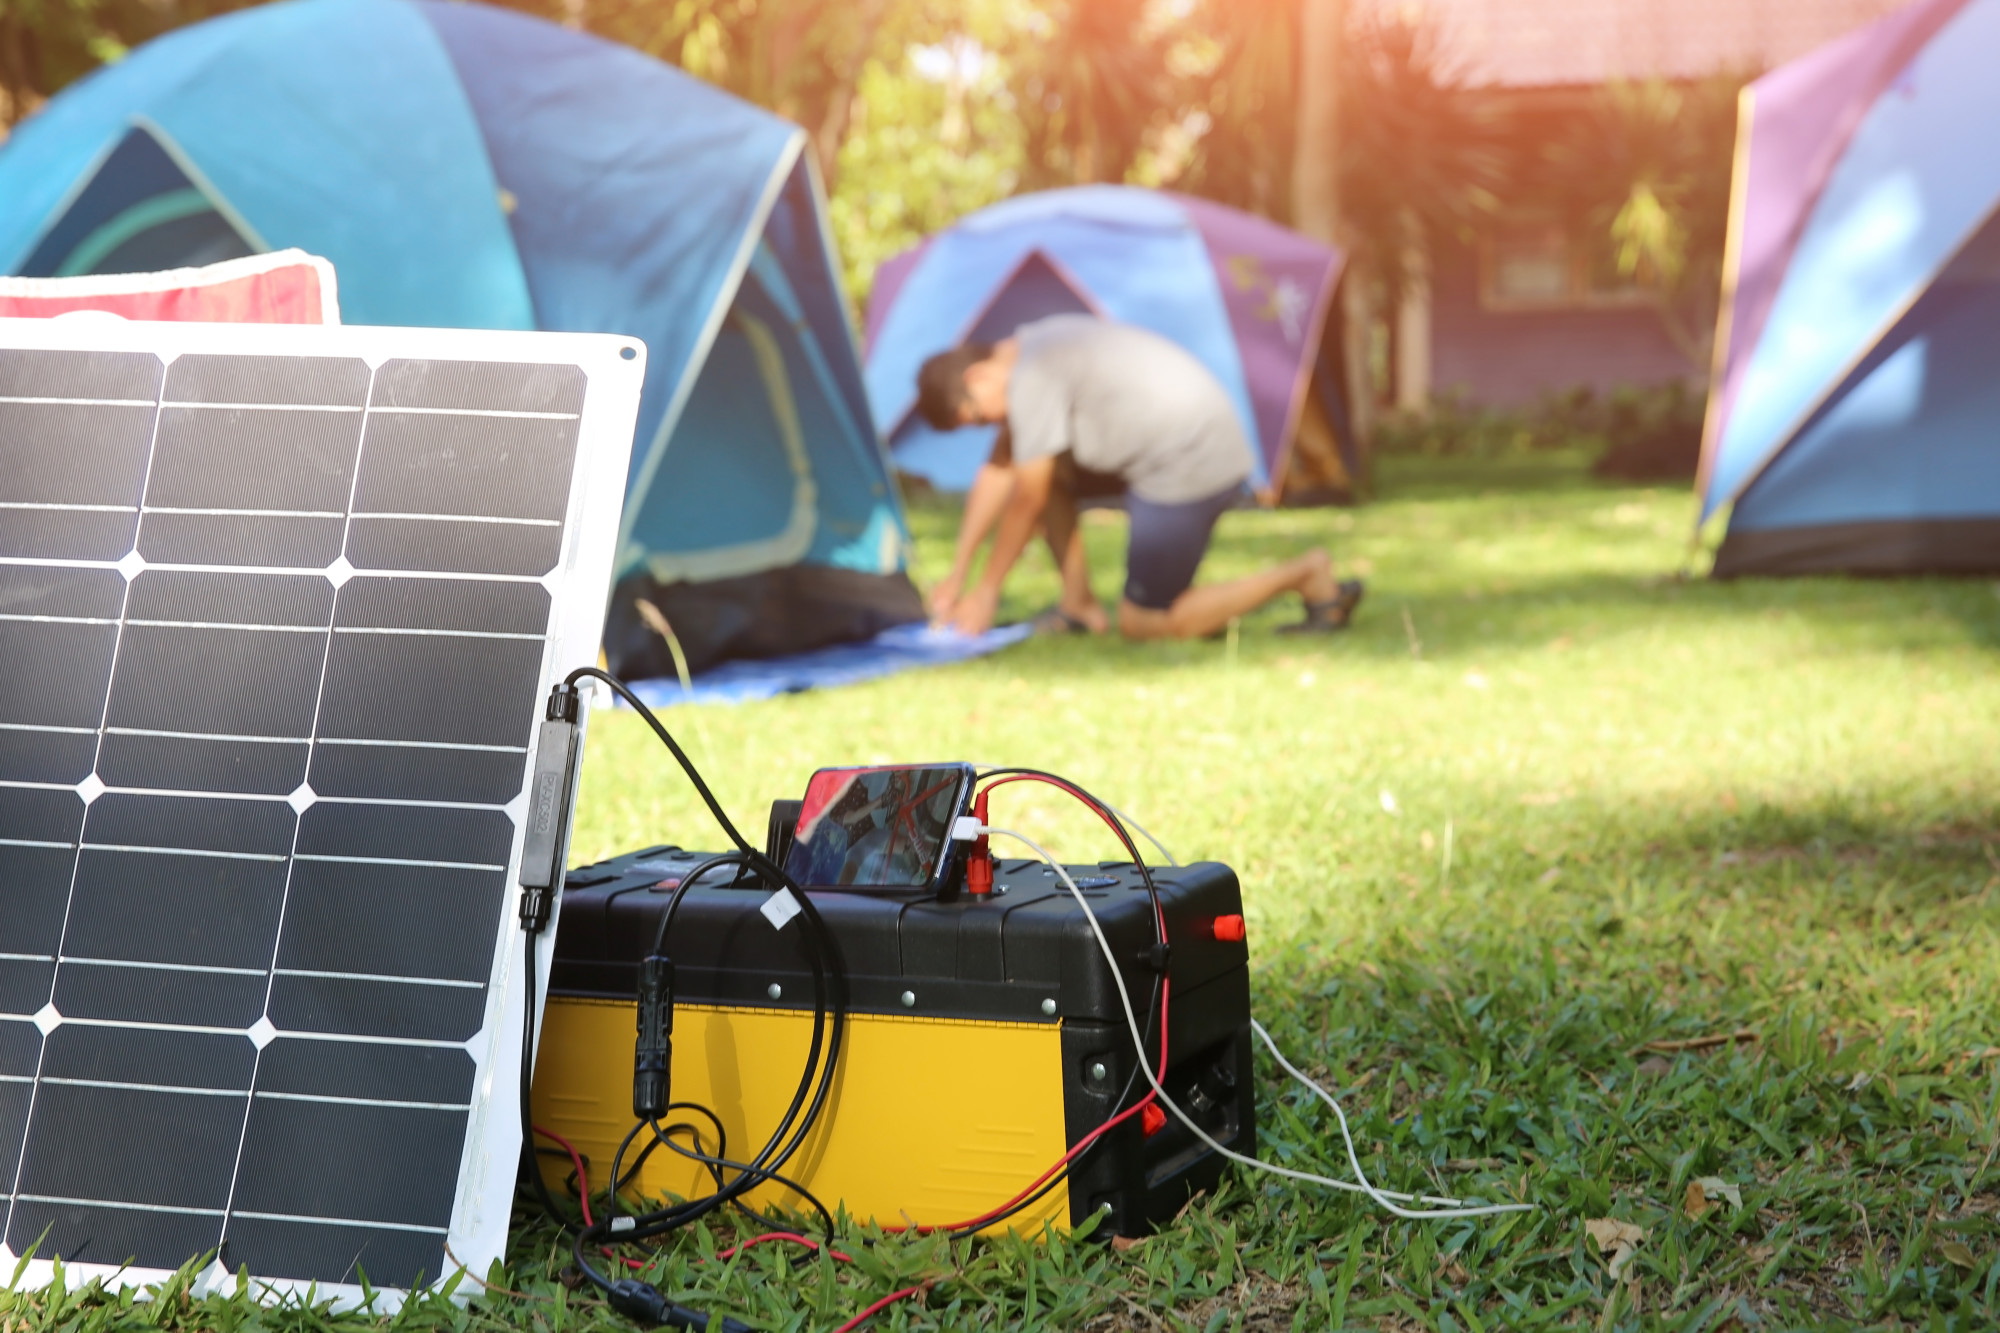 Portable Solar Power